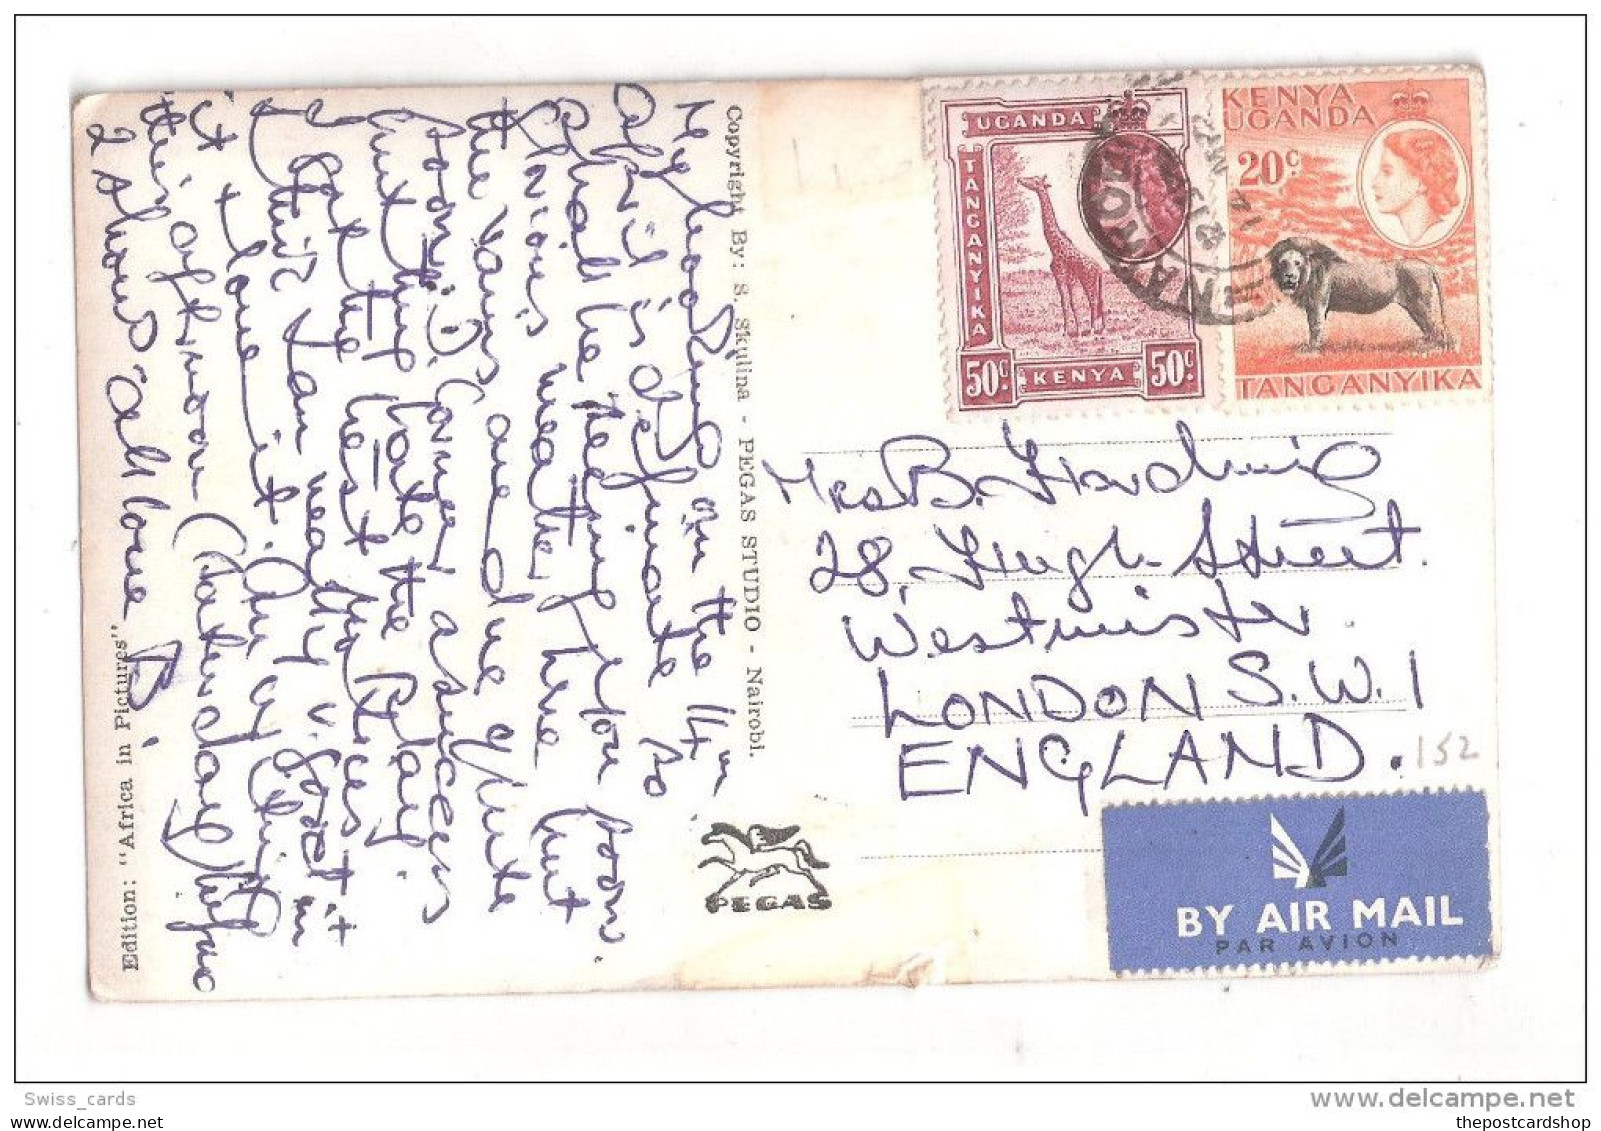 Uganda Kenya Tanganyika USED STAMPS Kenya MOMBASA OLD HARBOUR 1950s Postcard - Kenya